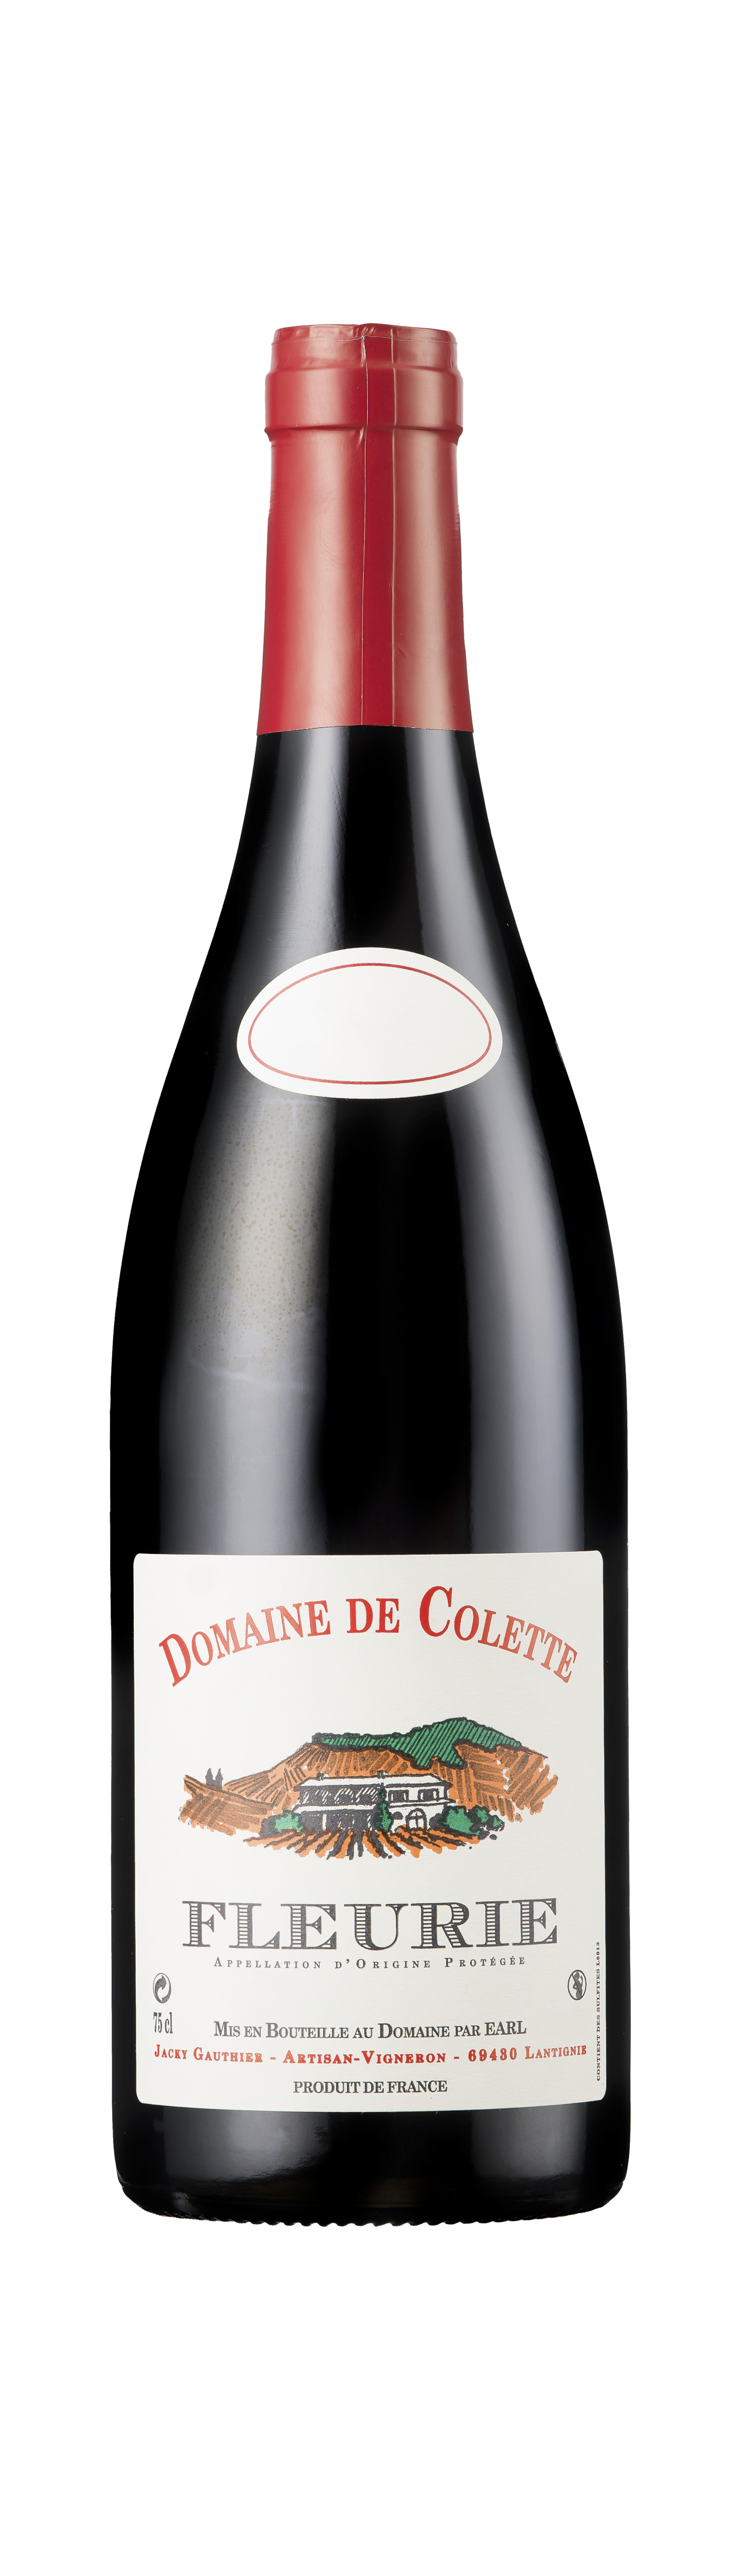 Bottle shot - Domaine de Colette, Fleurie, Beaujolais, France